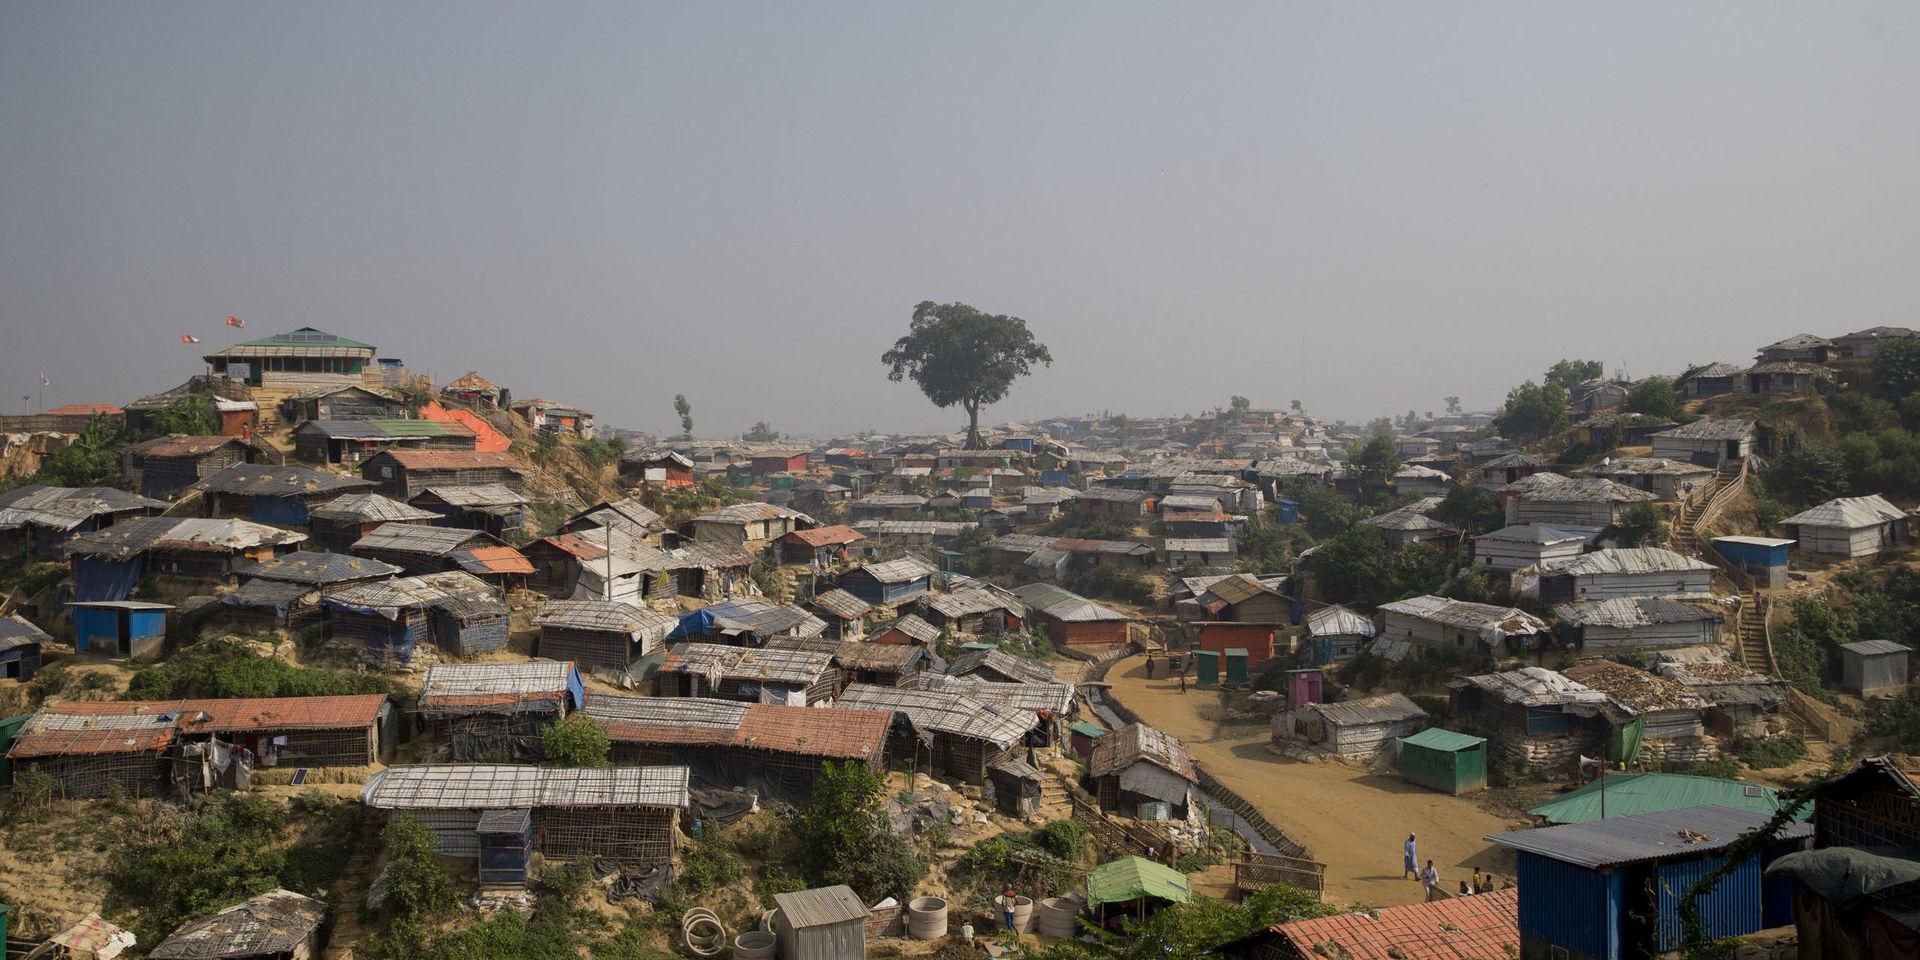 UNHCR har börjat intervjua rohingyaflyktingar i flyktinglägren i Bangladesh om hur de ställer sig till att återvända till Myanmar. Bangladesh regering vill att återflytten ska starta den 22 augusti.